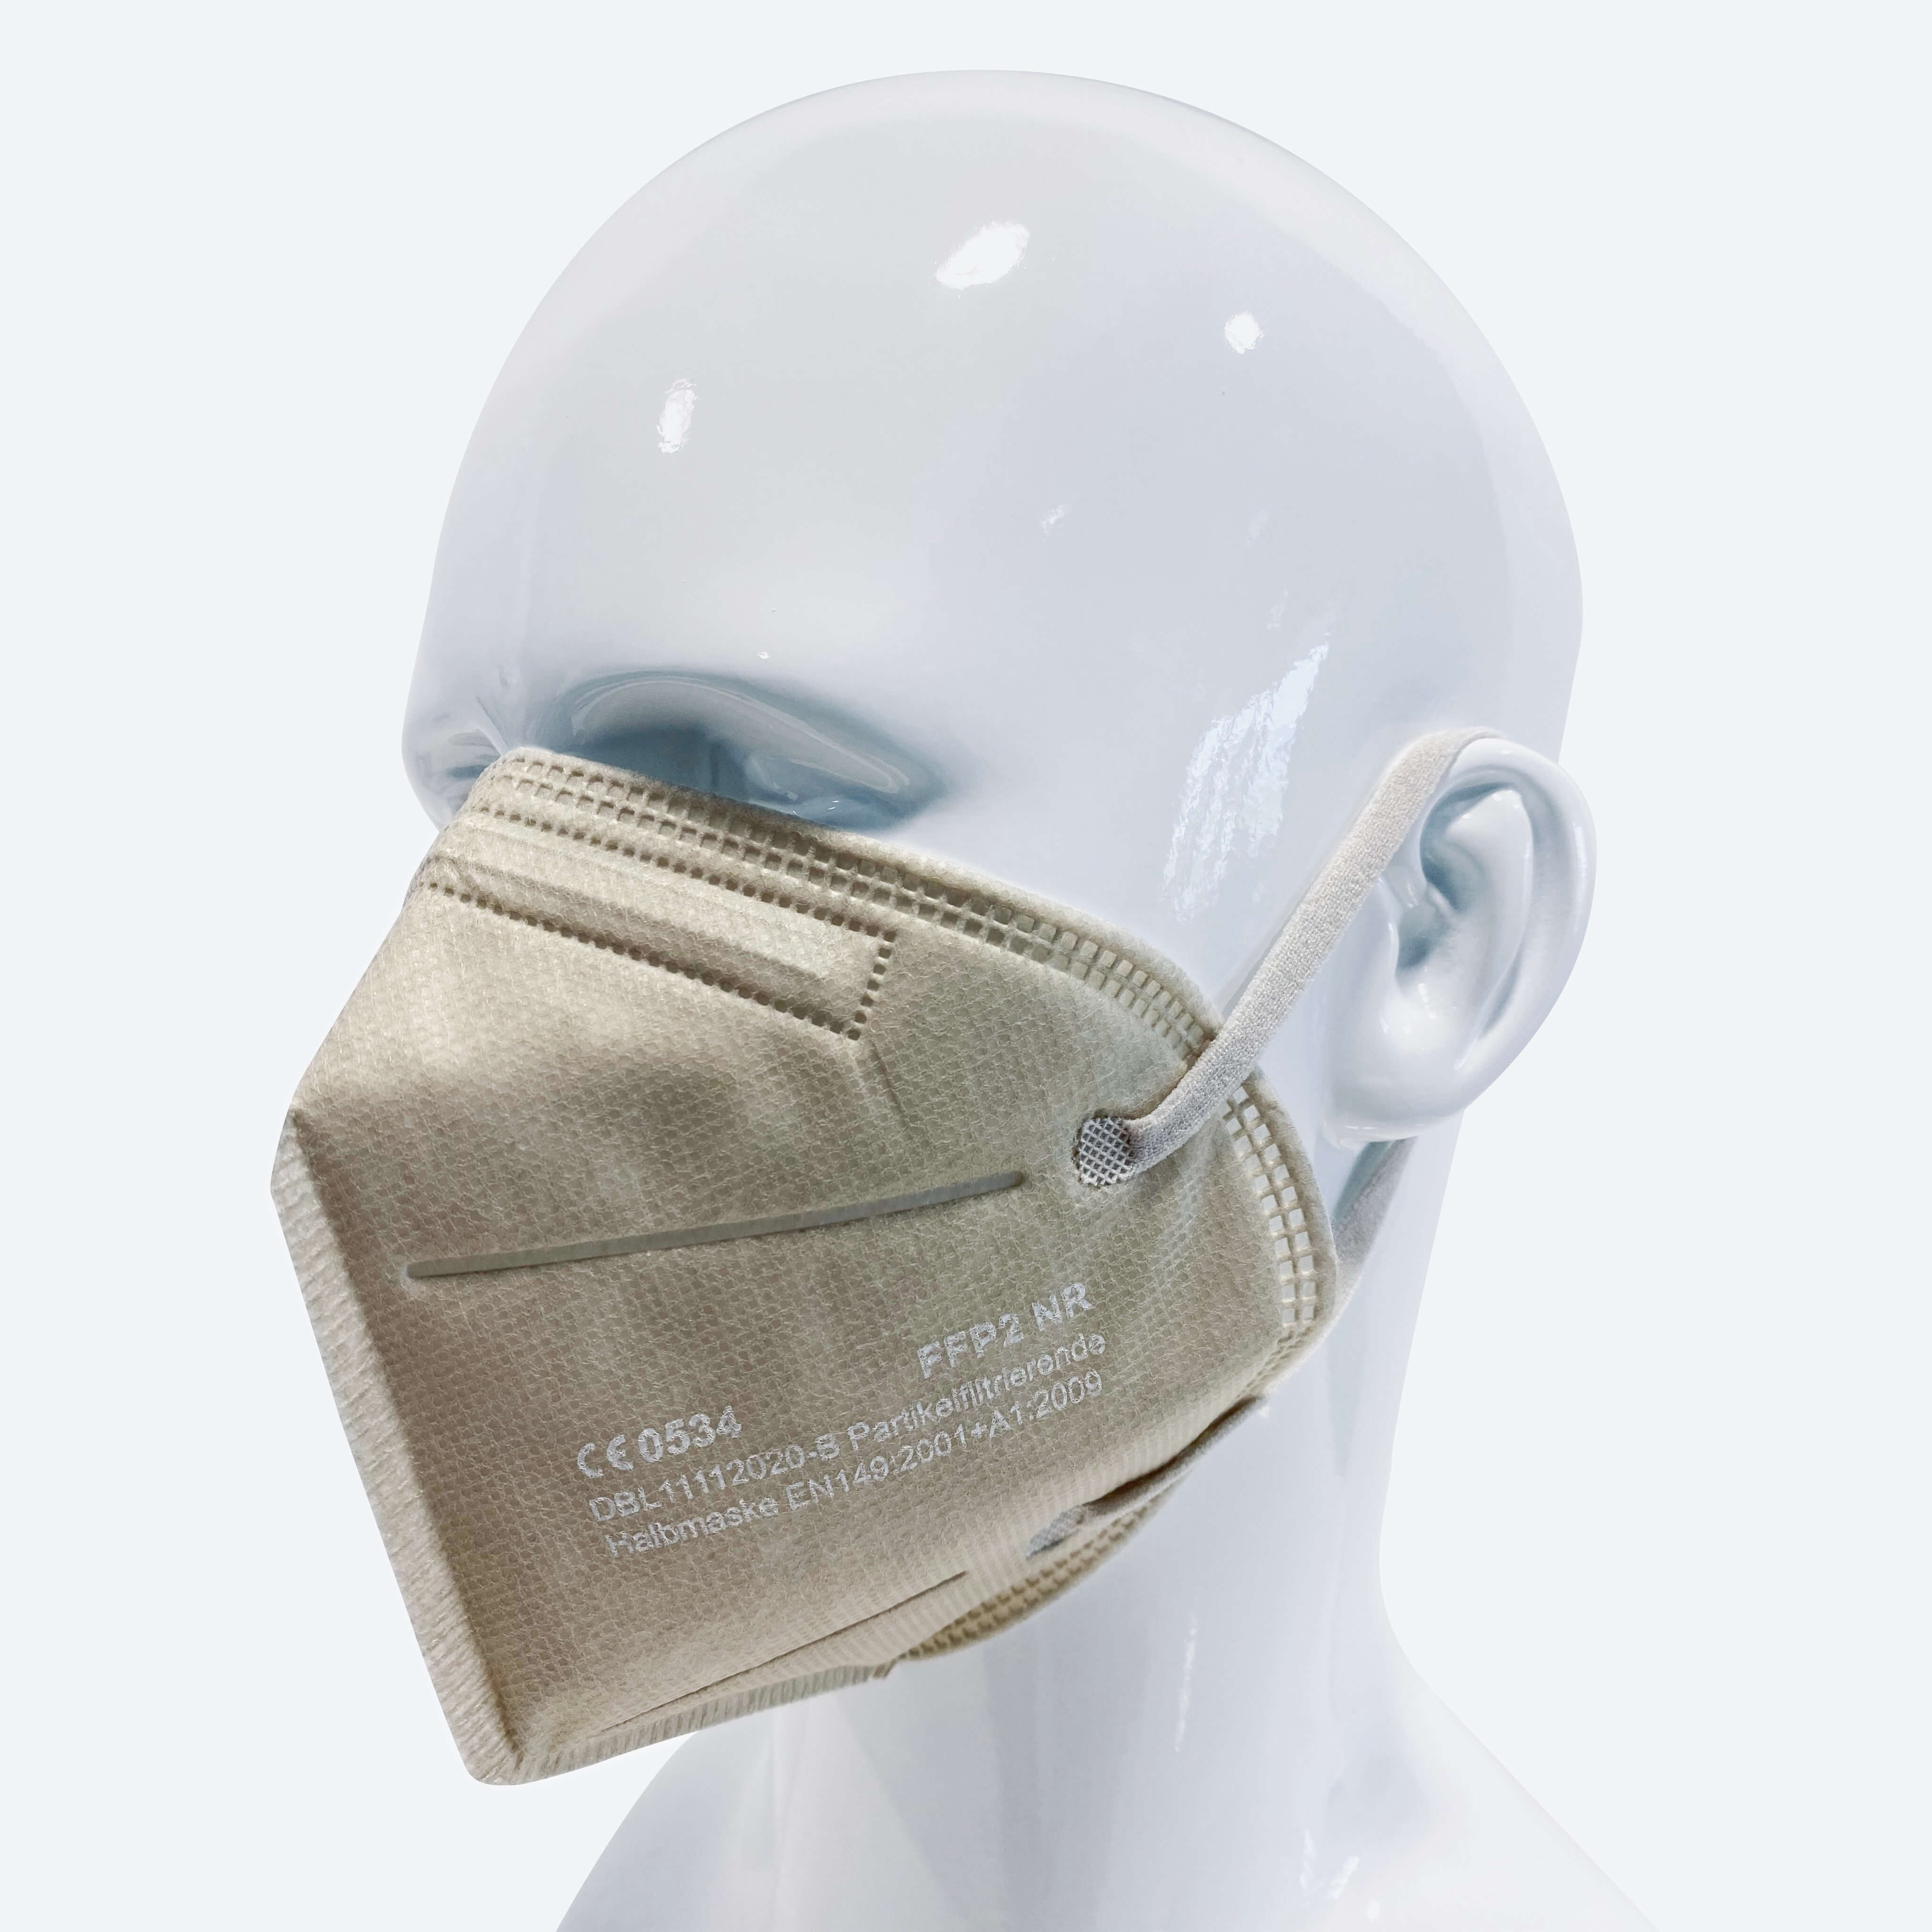 Qualitativ hochwertige FFP2-Schutzmasken - VANILLA EDITION 